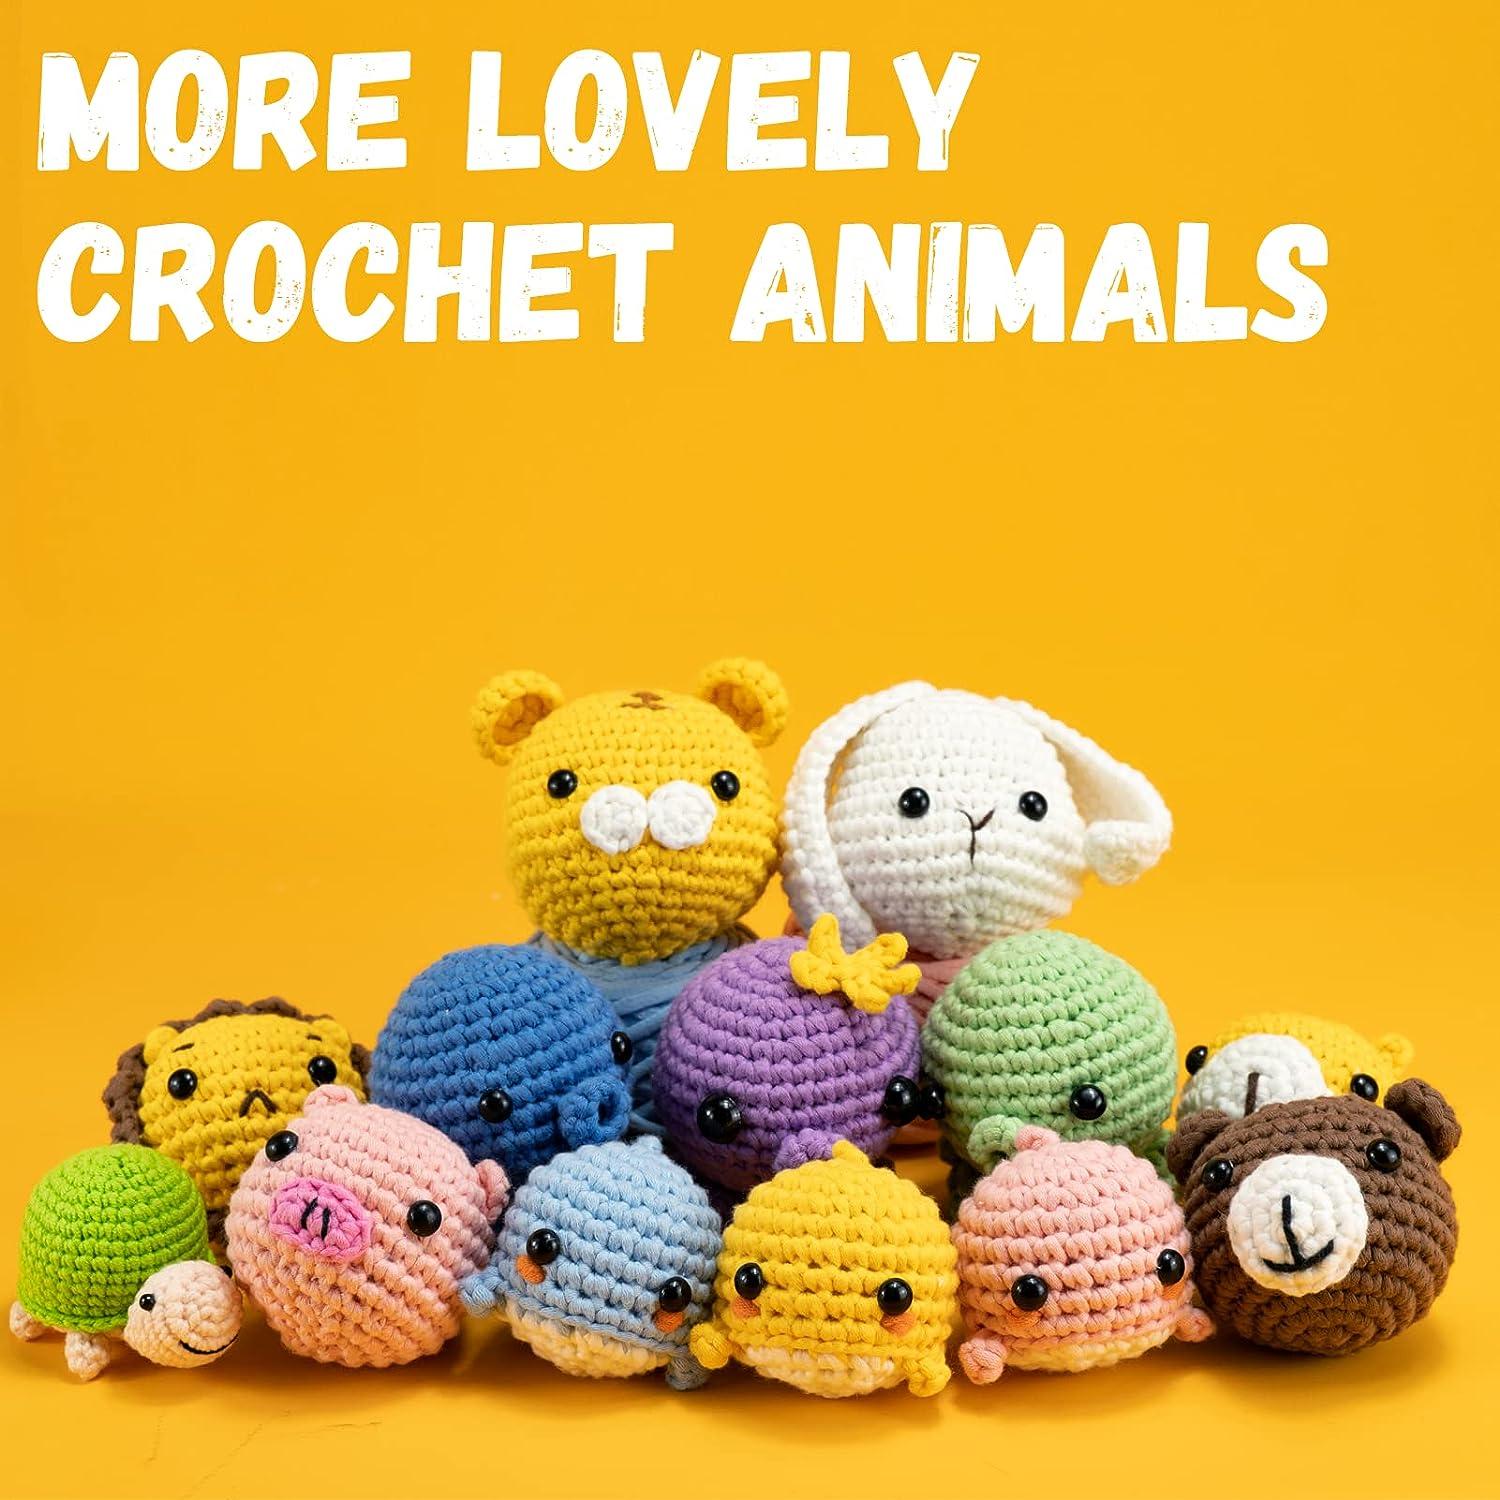 Crochet For Beginners Kit: Kit Beginners And Illustrations For Crochet book  Crochet Stitchers-Crochet Easy Learning crochet hook (Paperback)